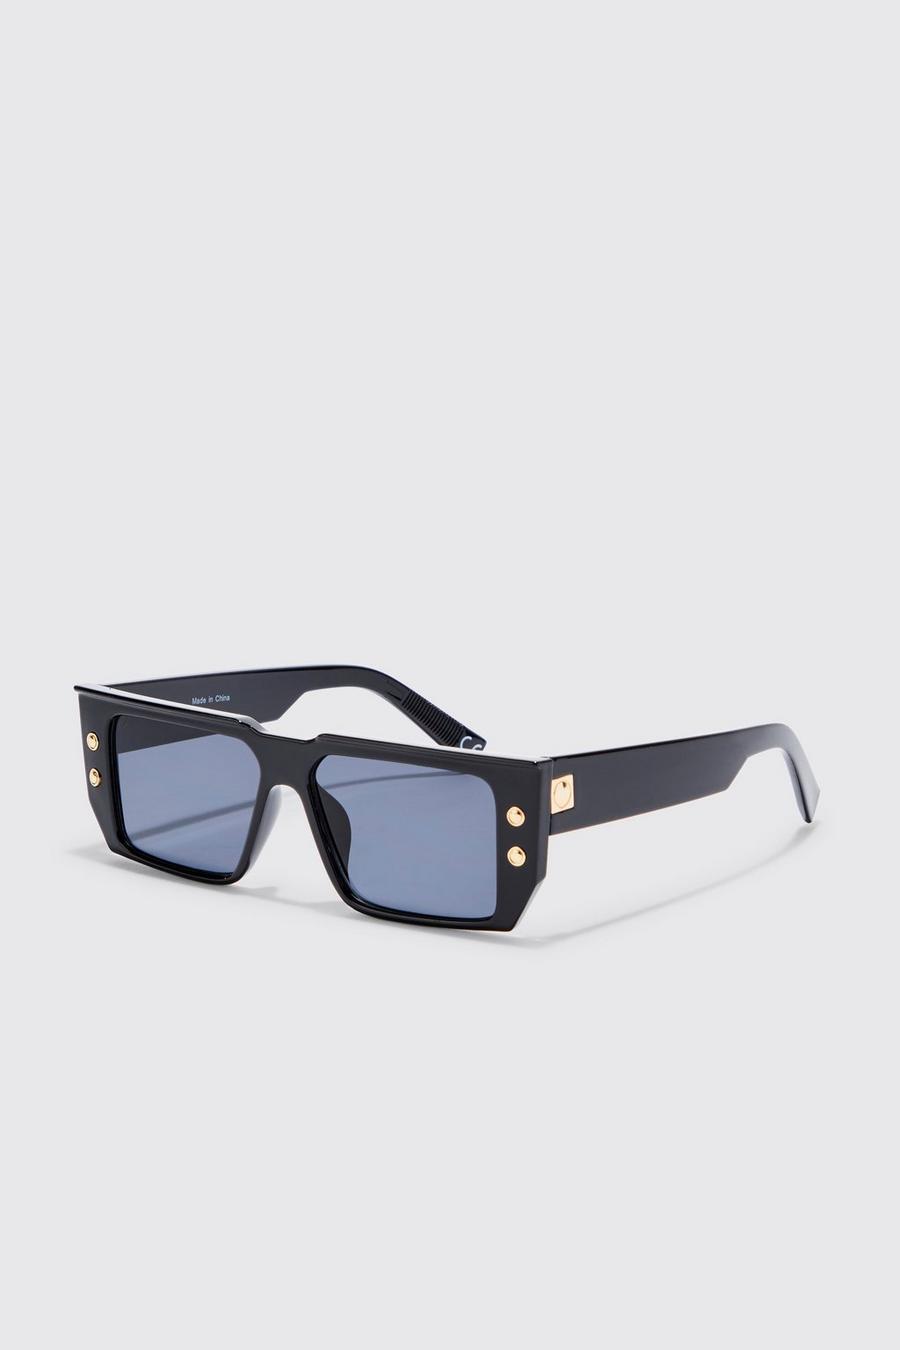 Eckige Retro-Sonnenbrille, Black schwarz